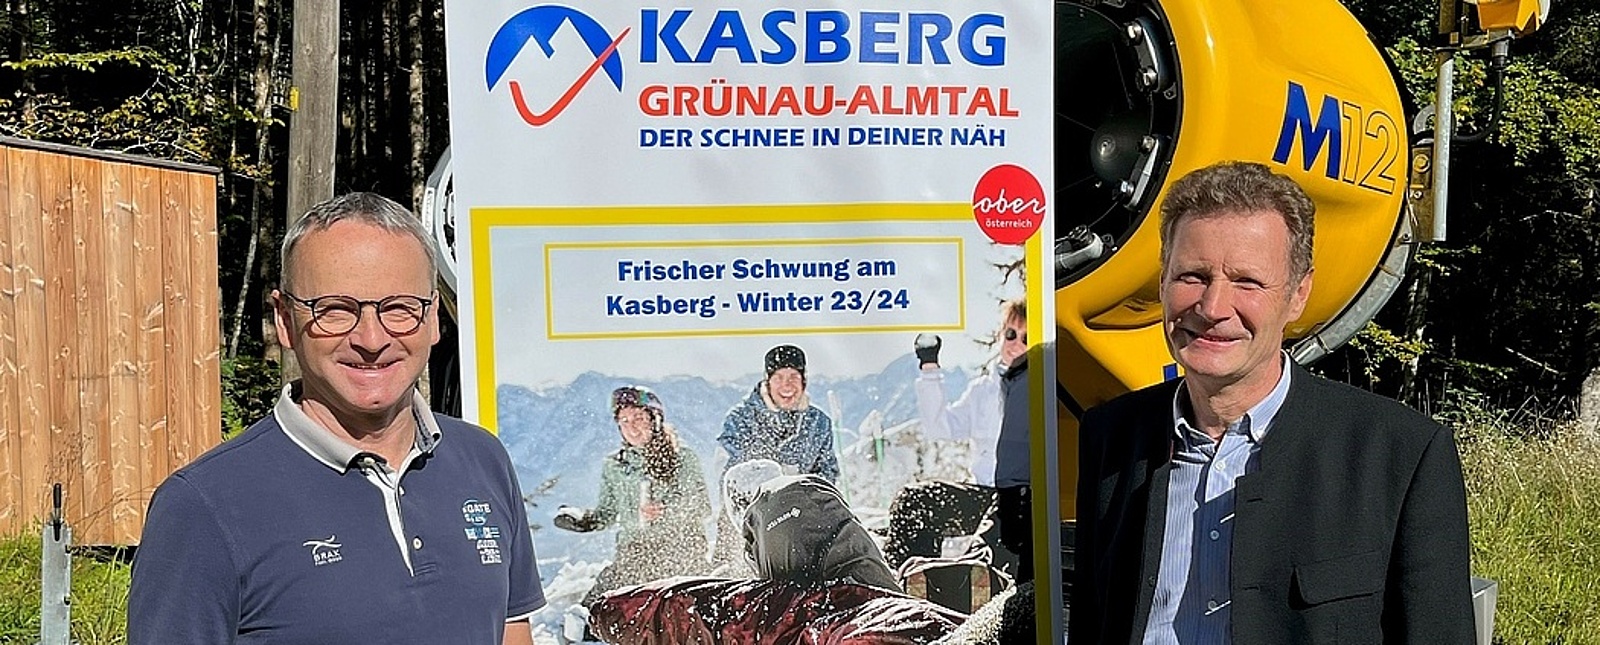 Foto: Kasberg Betriebs GmbH